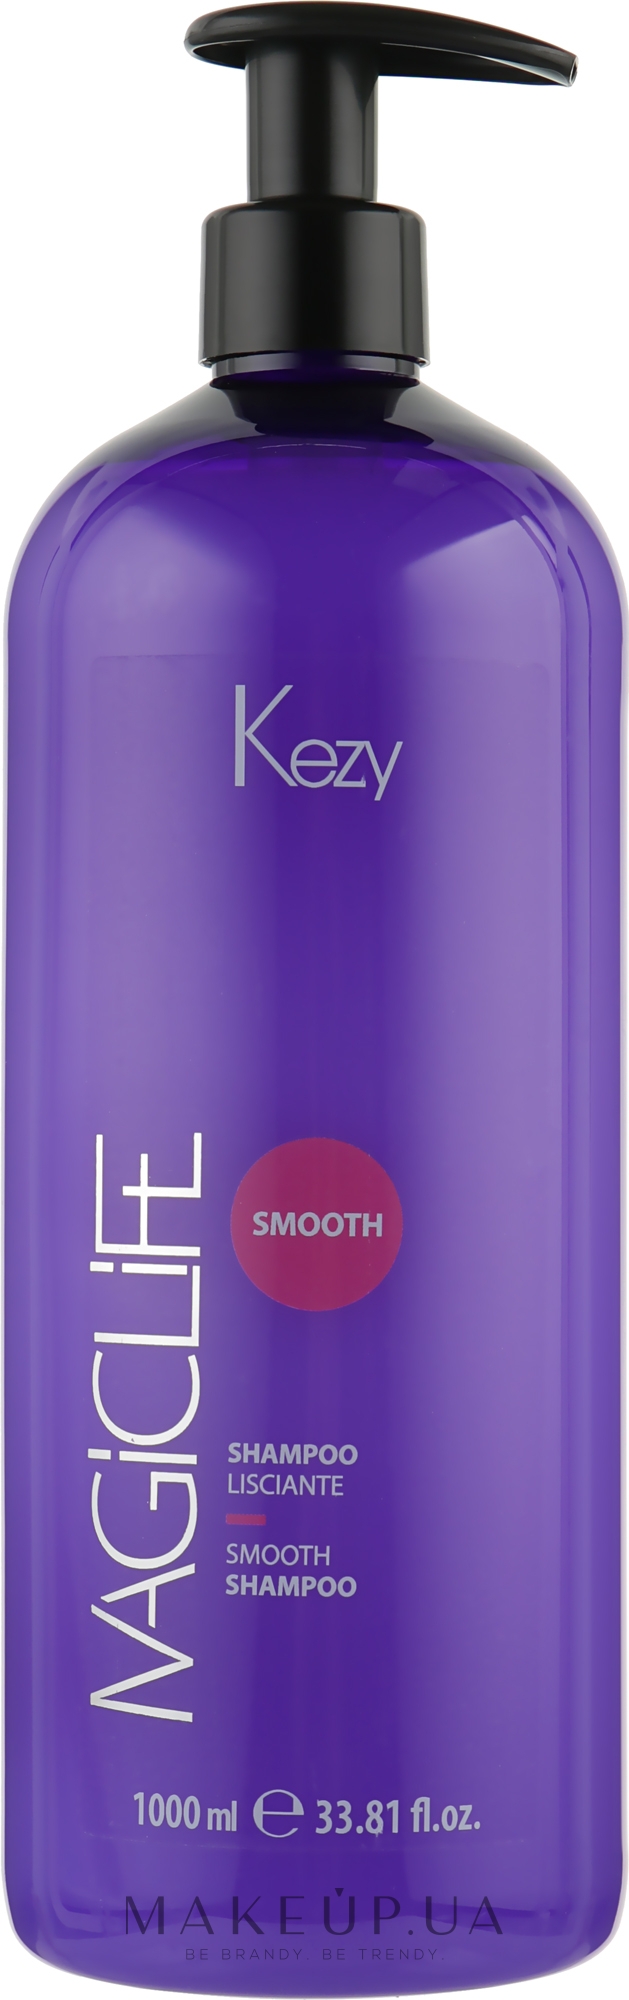 Шампунь "Разглаживающий" для вьющихся и непослушных волос - Kezy Magic Life Smooth Shampoo — фото 1000ml